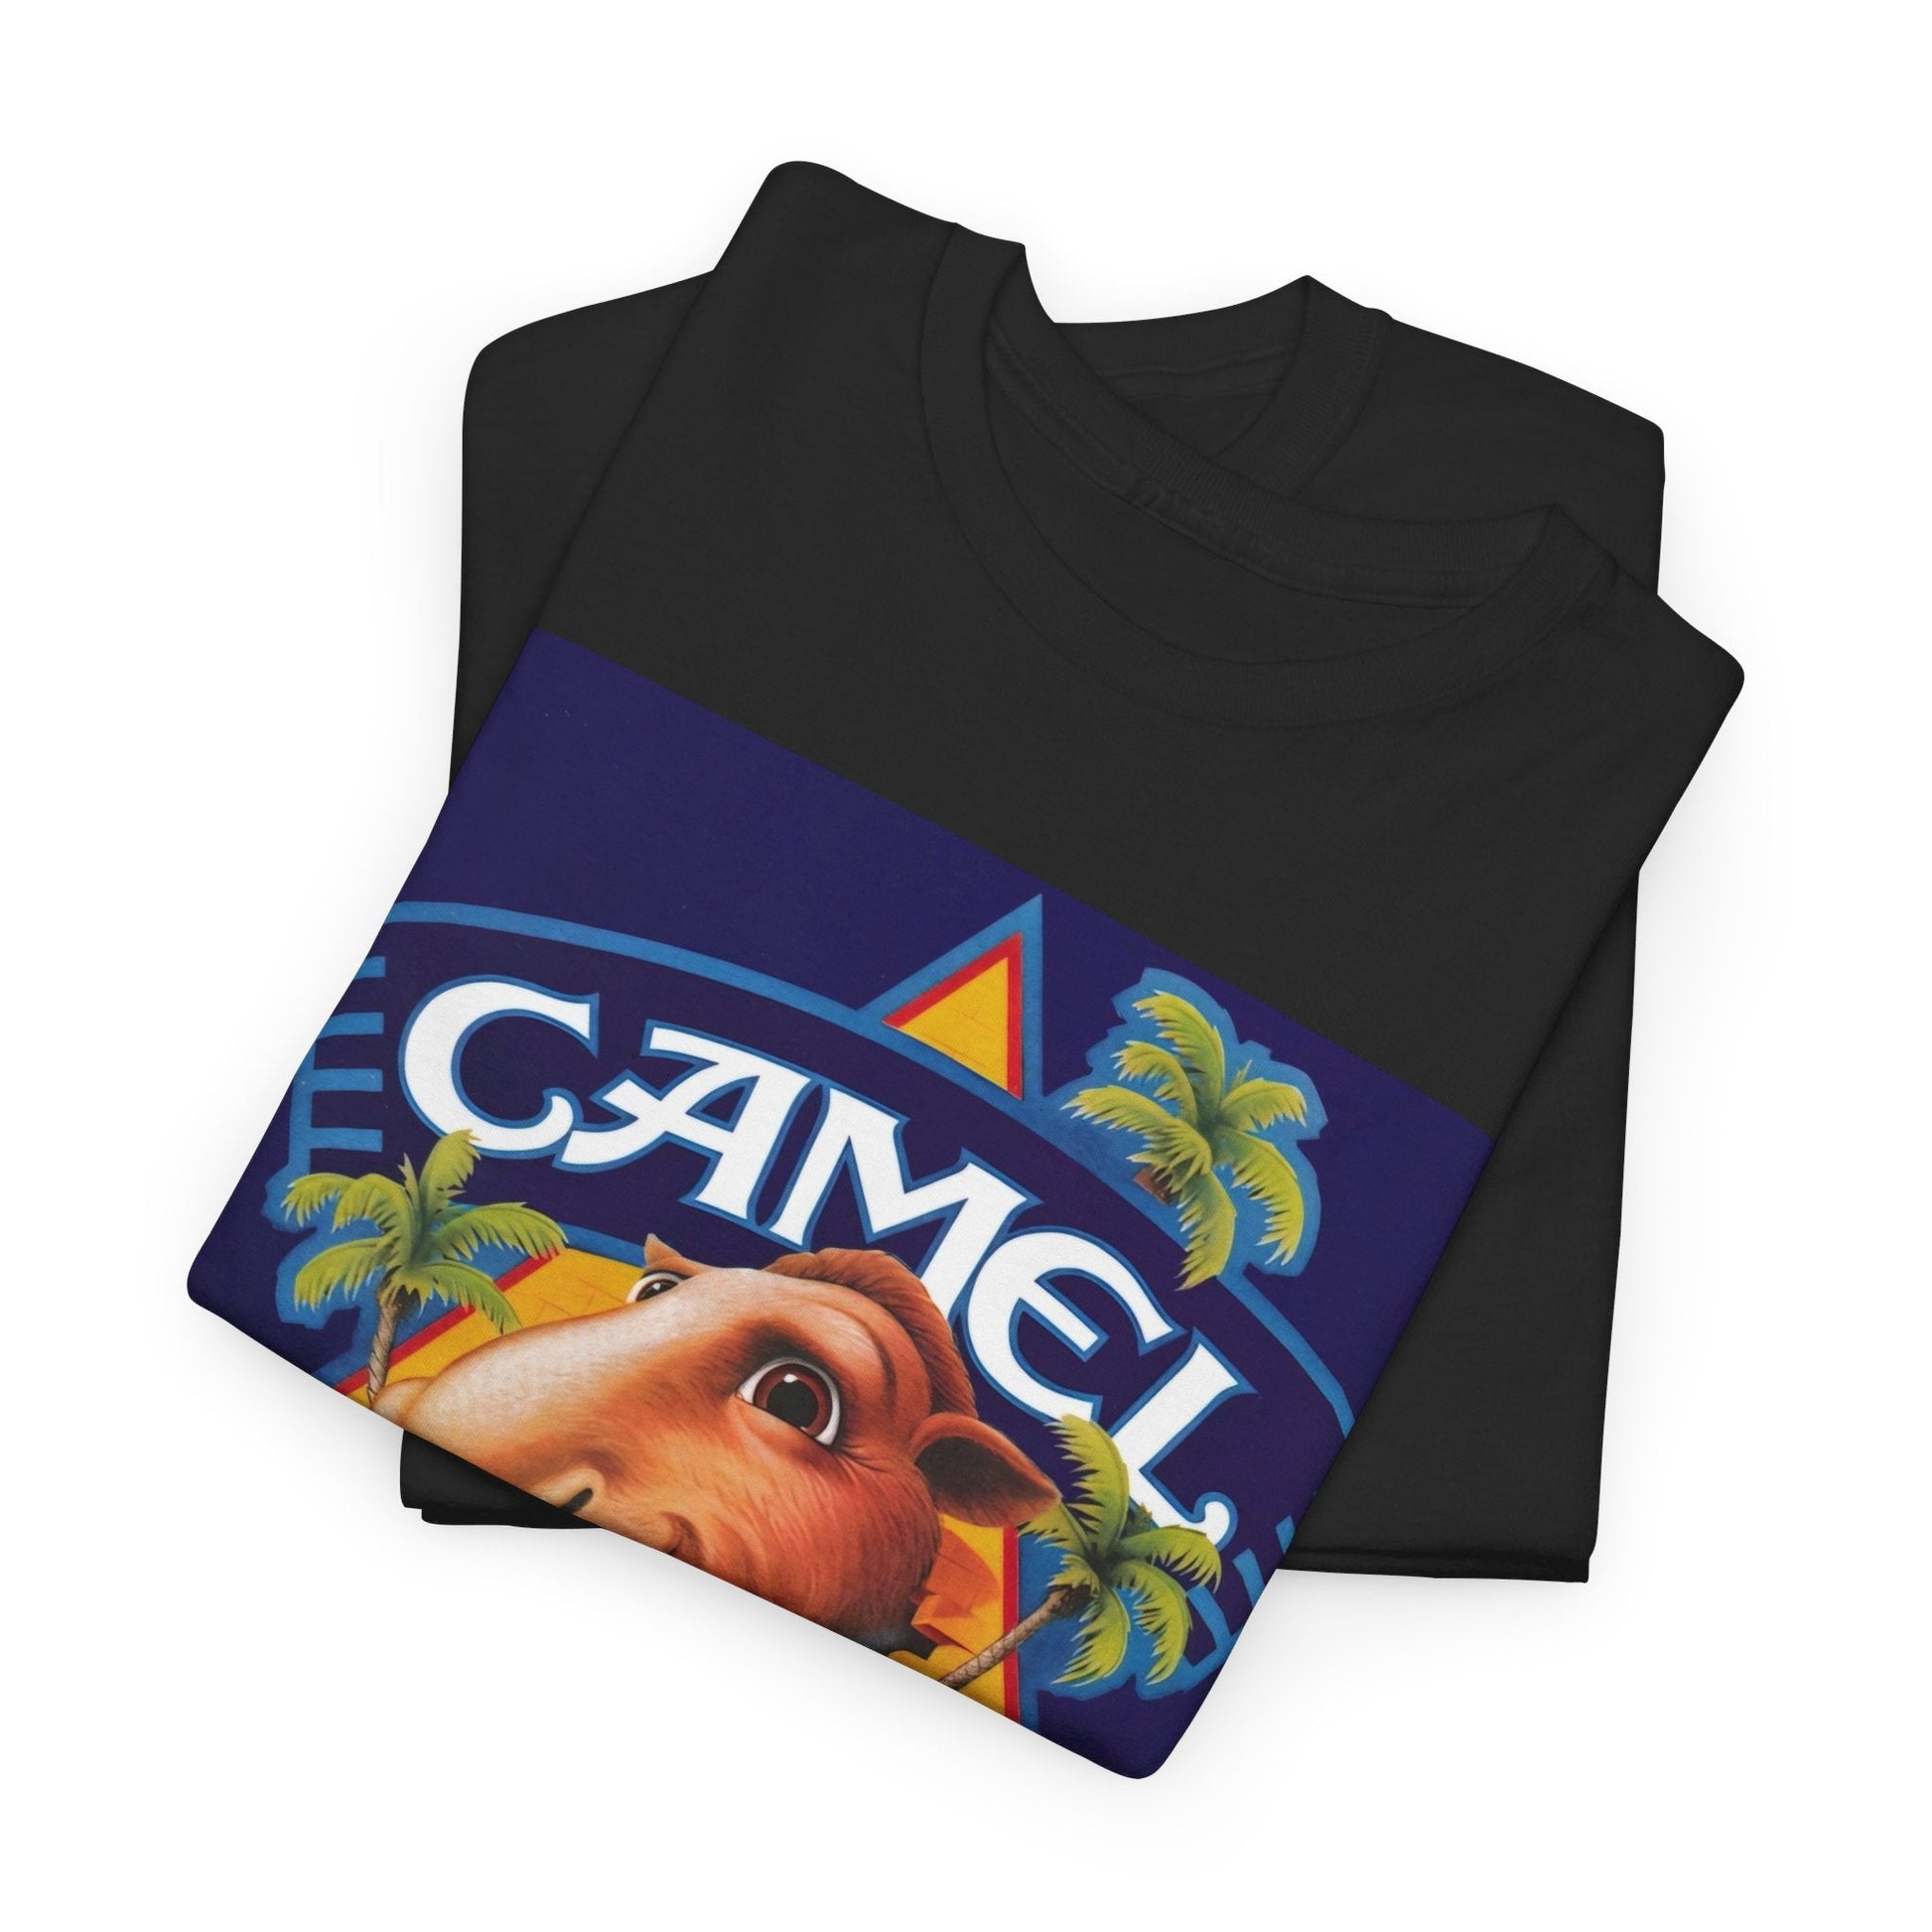 Vintage 1988 Joe Camel Cigarette 75th Birthday T-Shirt - RetroTeeShop